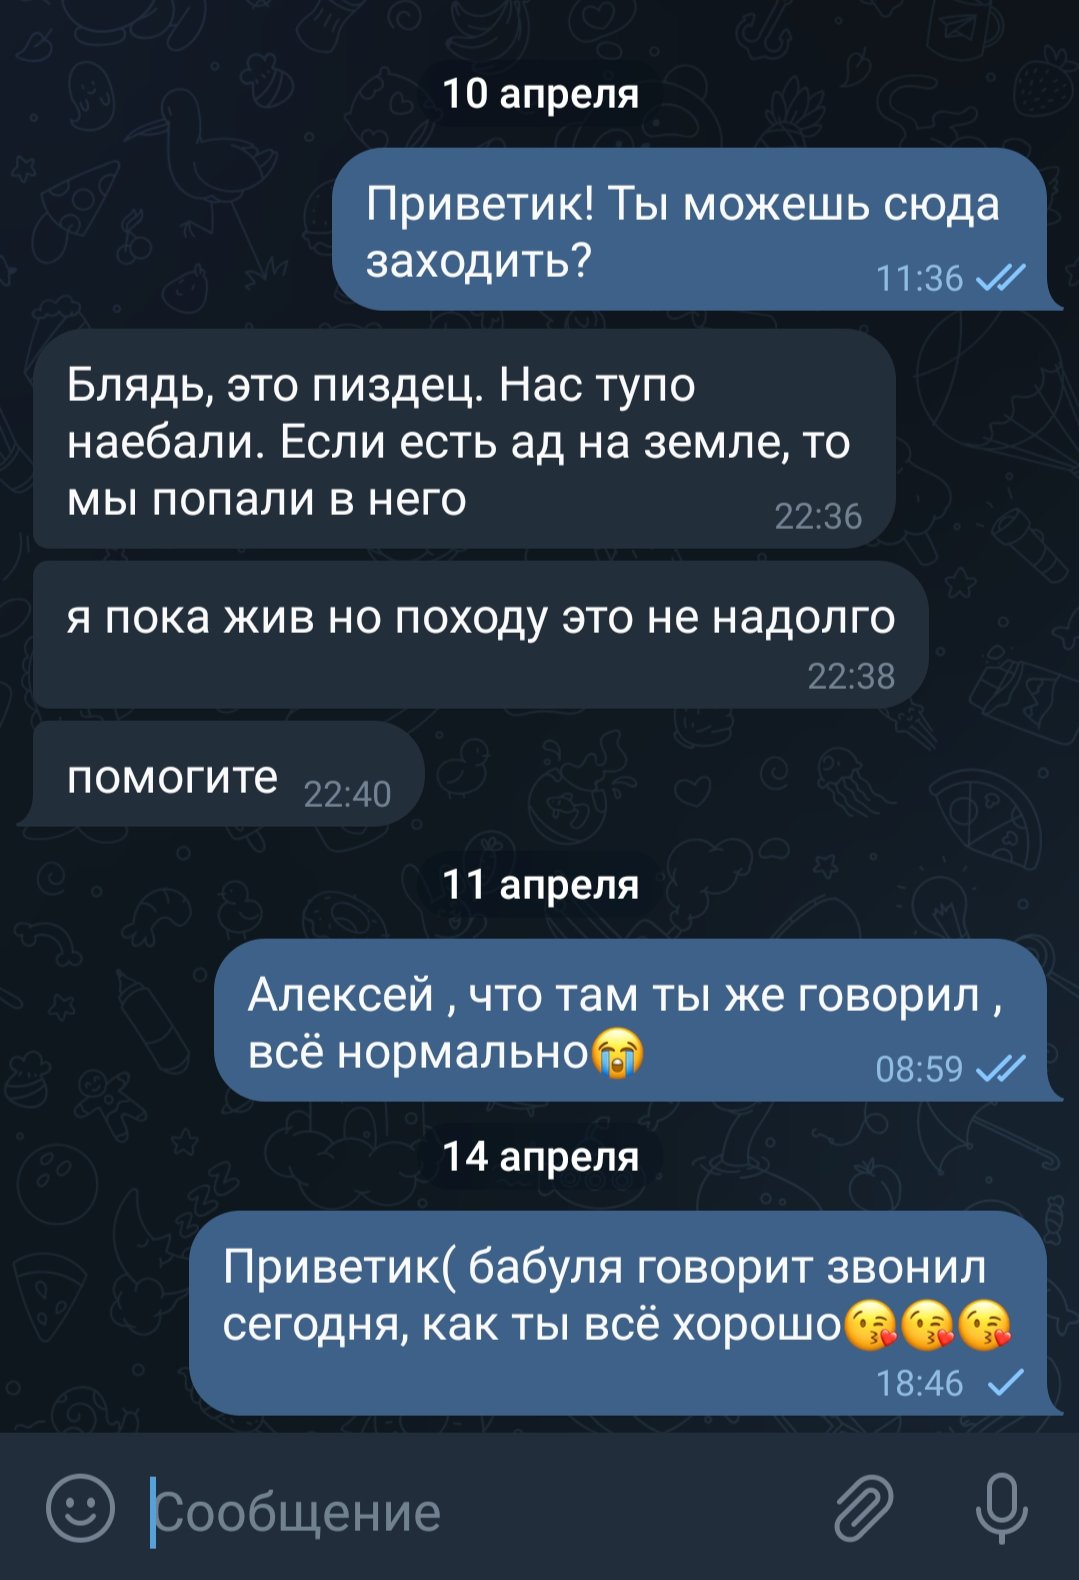 Сообщение от Алексея. Скриншот